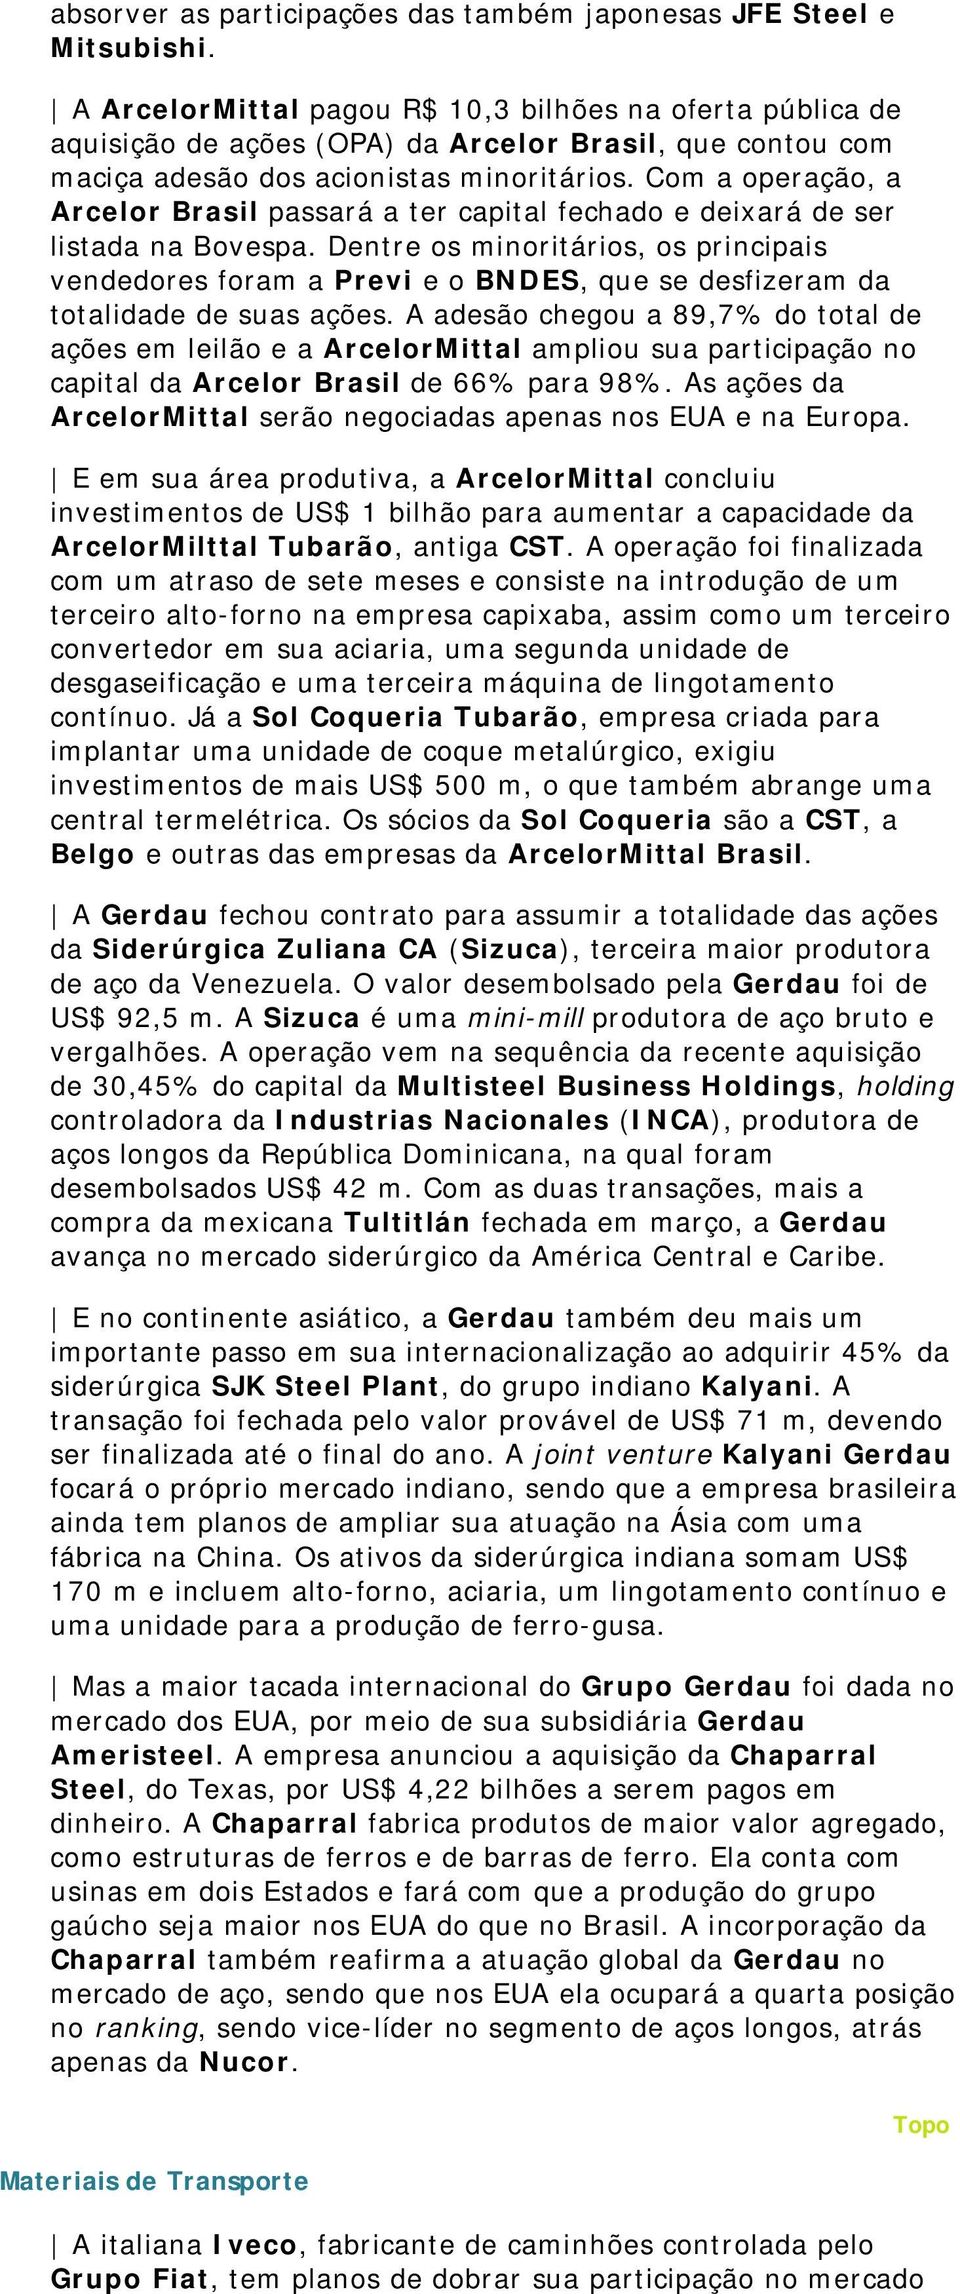 (OPA) da Arcelor Brasil, que contou com maciça adesão dos acionistas minoritários. Com a operação, a Arcelor Brasil passará a ter capital fechado e deixará de ser listada na Bovespa.